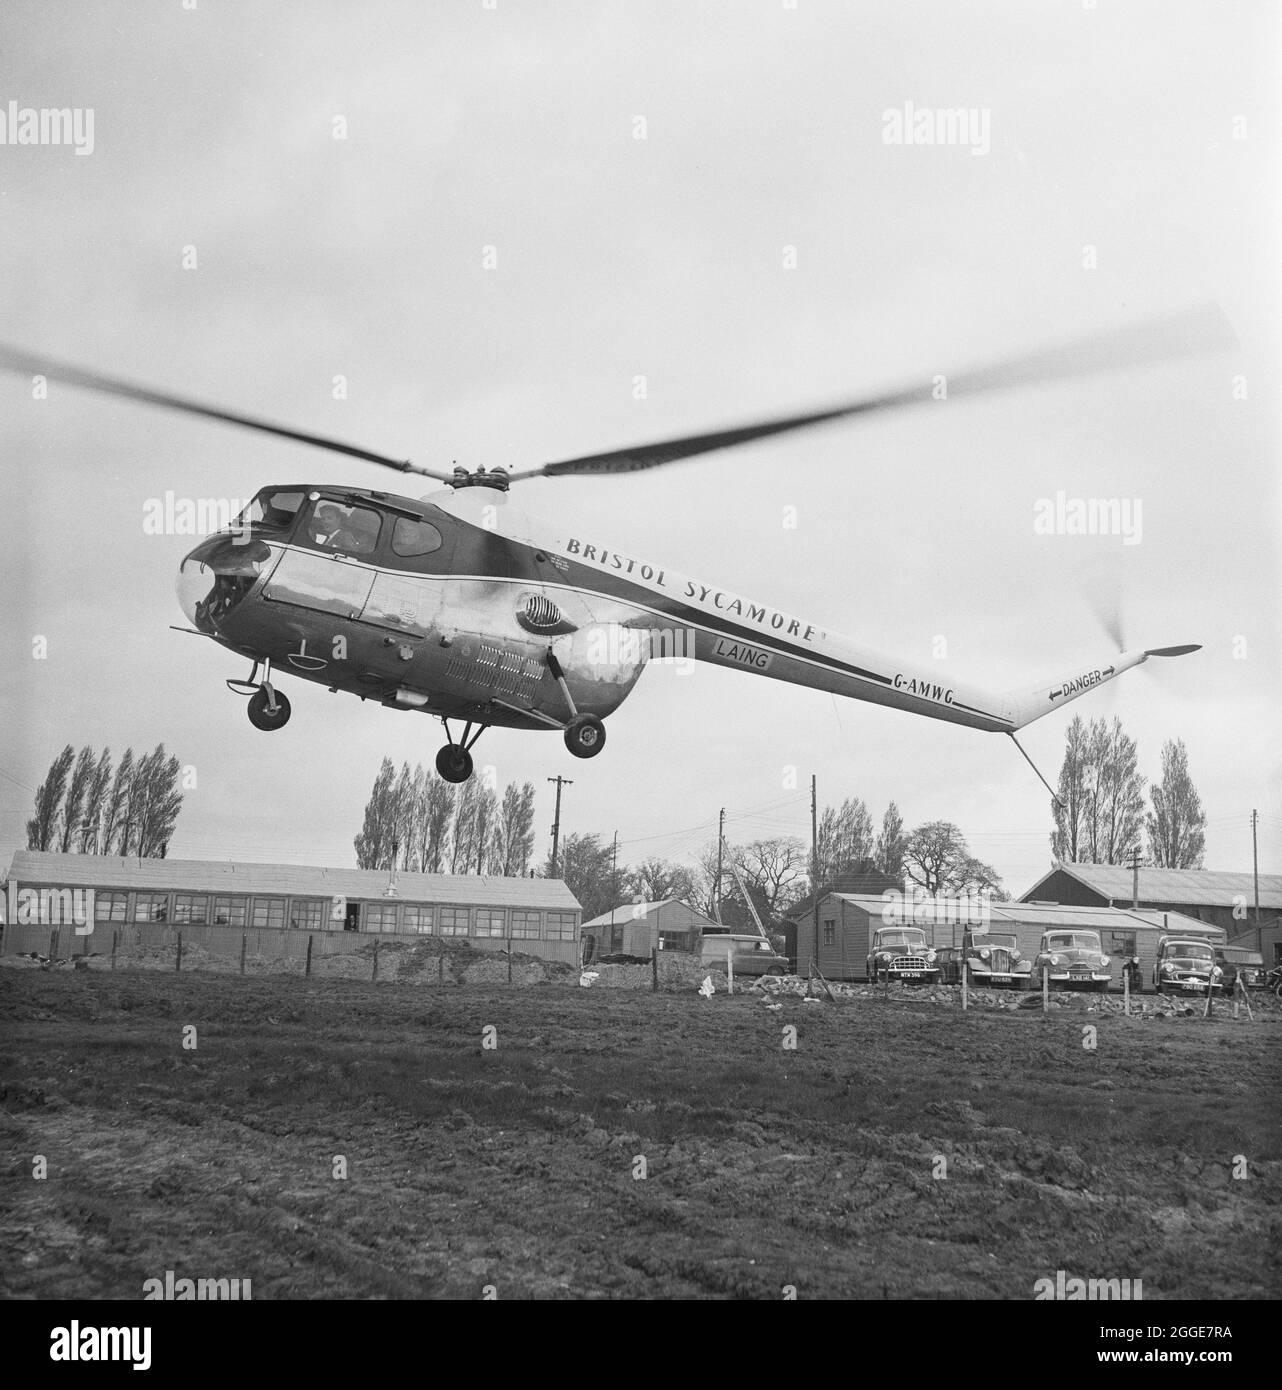 Ein Helikopter, der vom Project C Office abfliegt, um den Fortschritt beim Bau der M1, der London to Yorkshire Motorway, zu überprüfen. Der Hubschrauber brachte John Michie, W. M. Johnson und C. W. Johnson zu einem Flug, um die Fortschritte auf der Autobahn zu überprüfen. Stockfoto